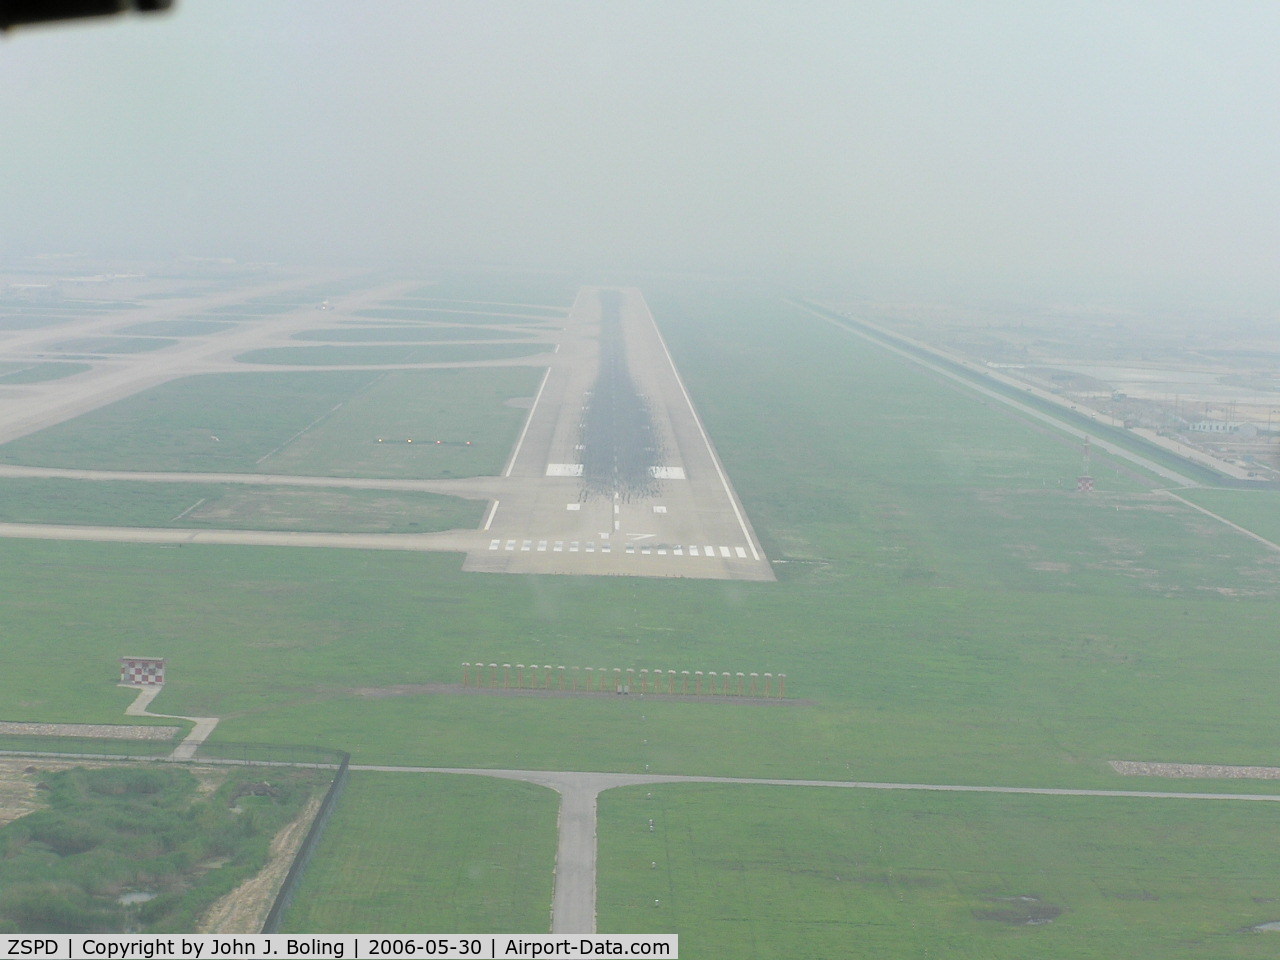 Shanghai Pudong International Airport, Shanghai China (ZSPD) - Runway 17 at Shanghai Pu Dong Airport